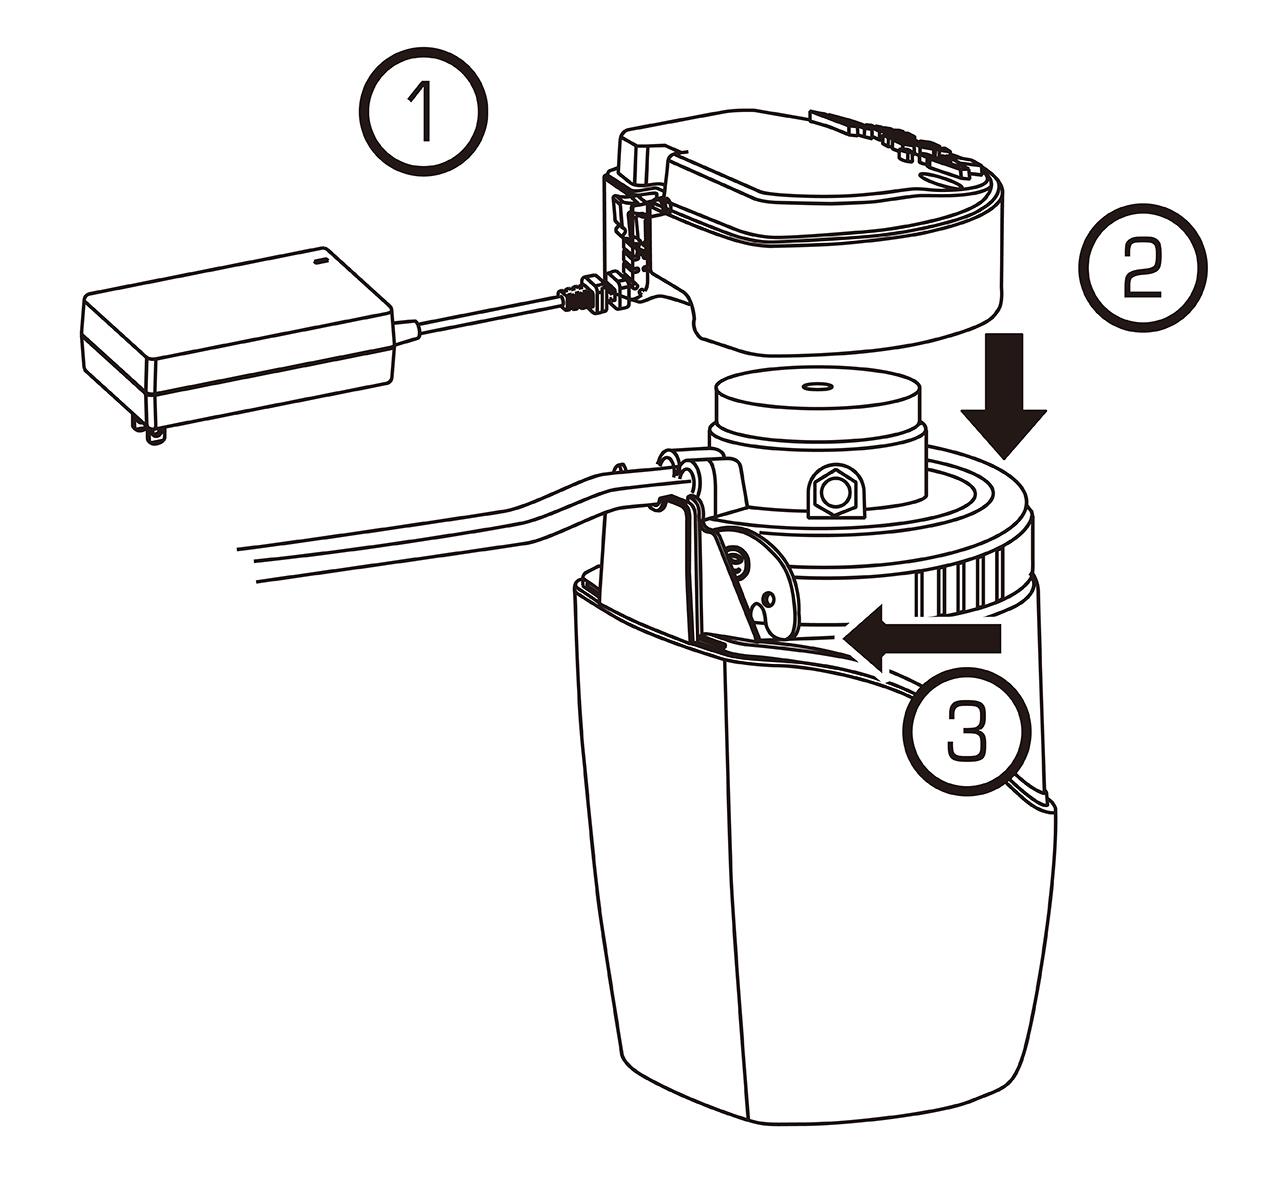 益之源淨水器分流器安裝教學-內螺紋水龍頭 🔹完成安裝  1. 將電源供應器（插頭）重新組裝到電子模組1️⃣。將電子模組放置於濾心蓋上2️⃣。將可拆除並聯水管的水管拔除器妥善收藏3️⃣。